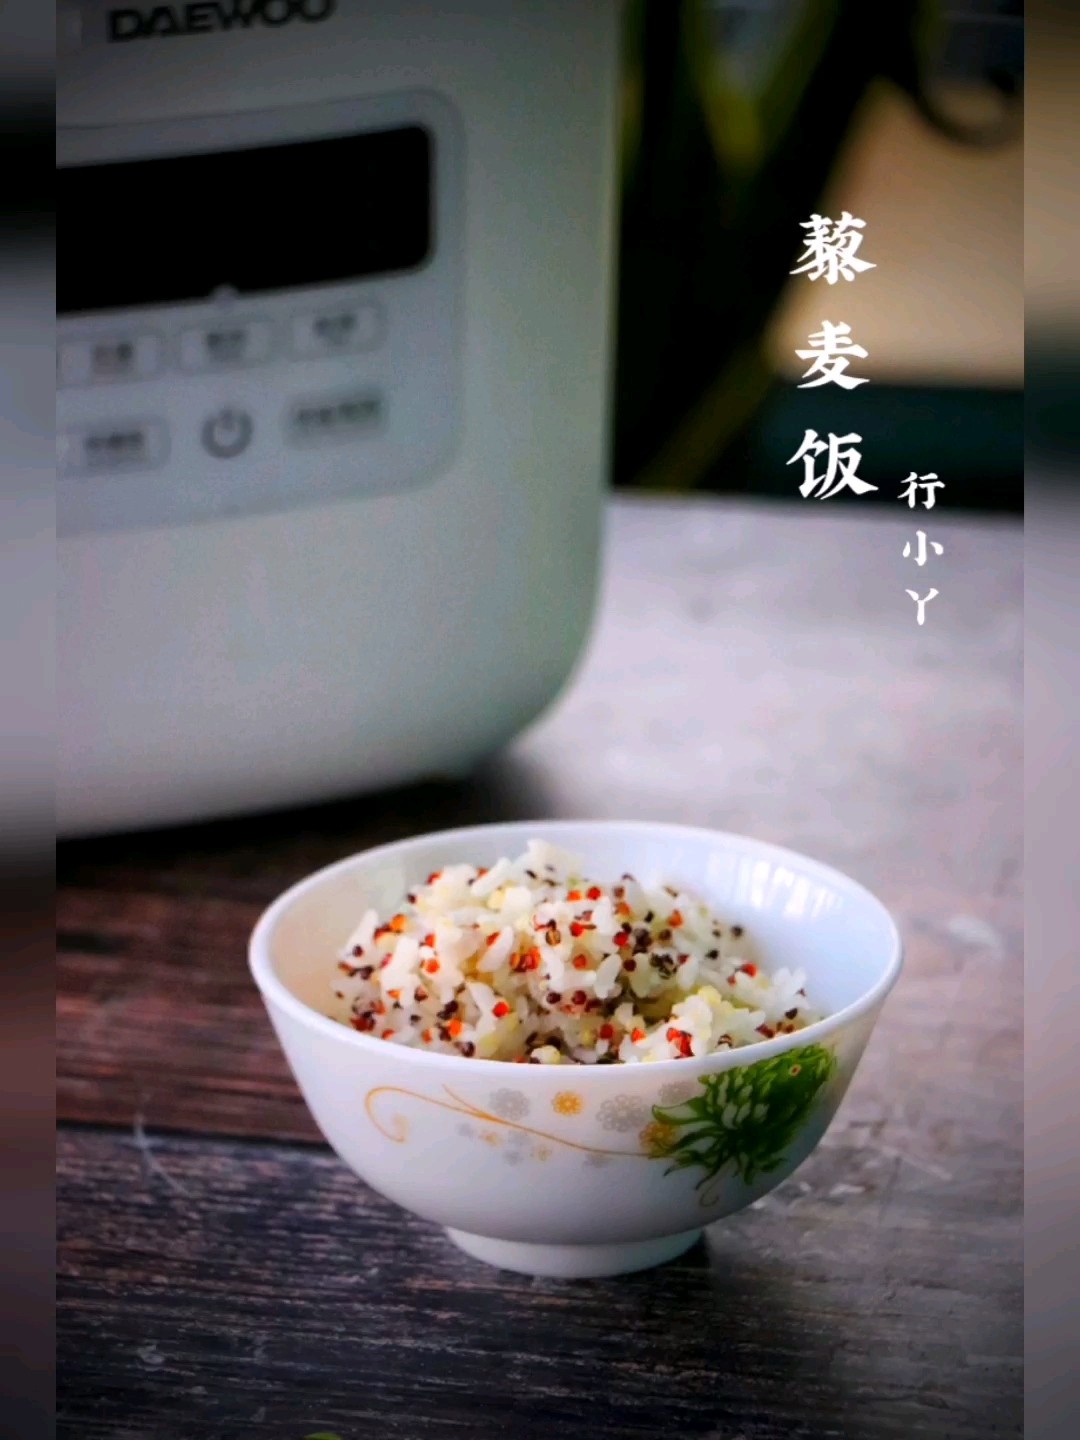 Tricolor Quinoa Rice